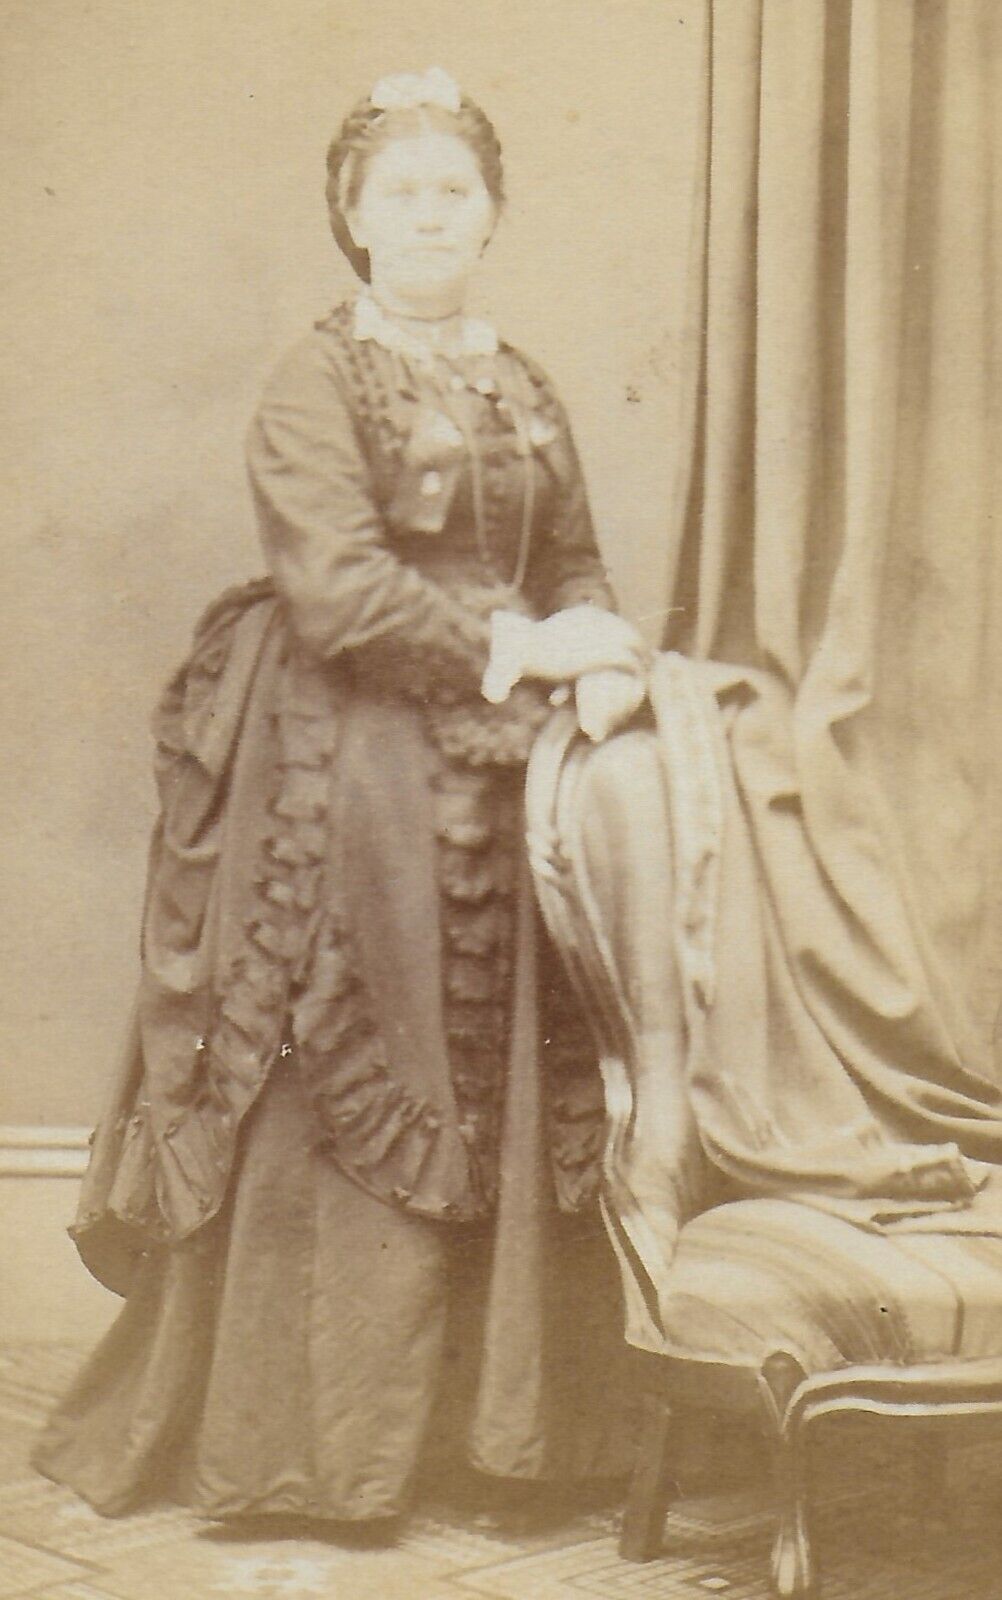 1880s CDV FULL PORTRAIT -  PRETTY WOMAN IN DRESS - ANTIQUE PHOTOGRAPH